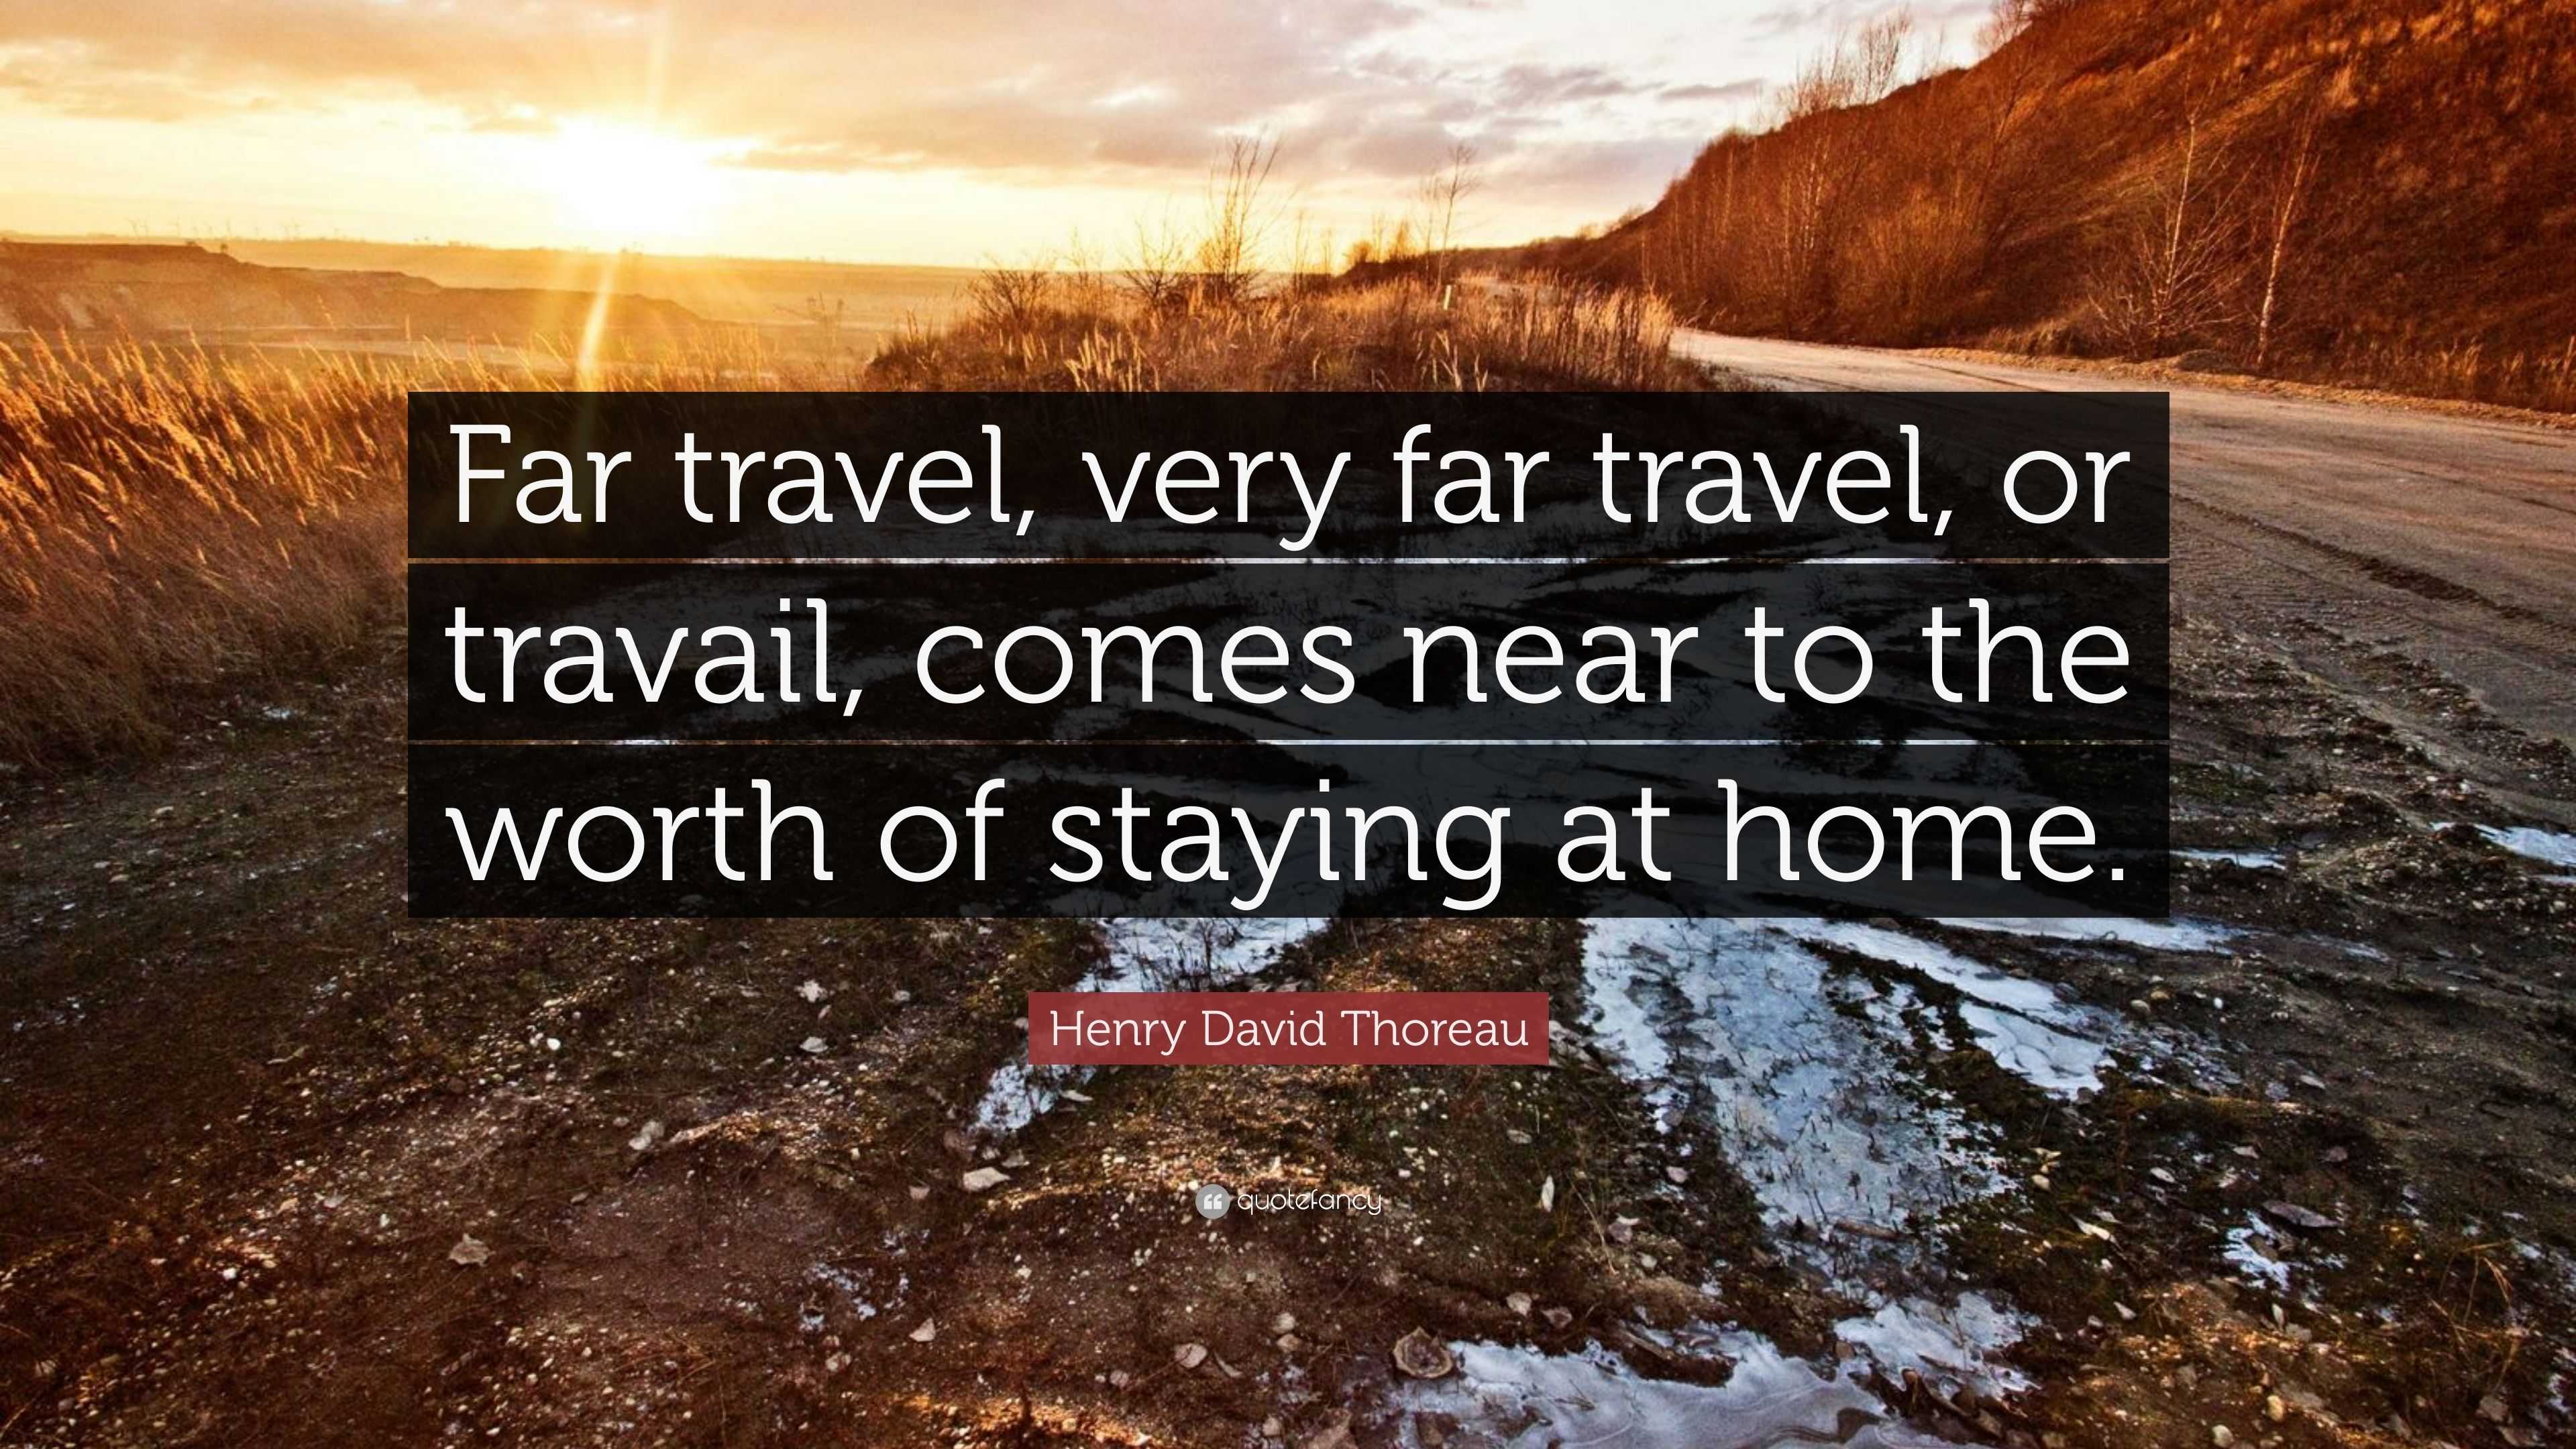 henry david thoreau travel quote